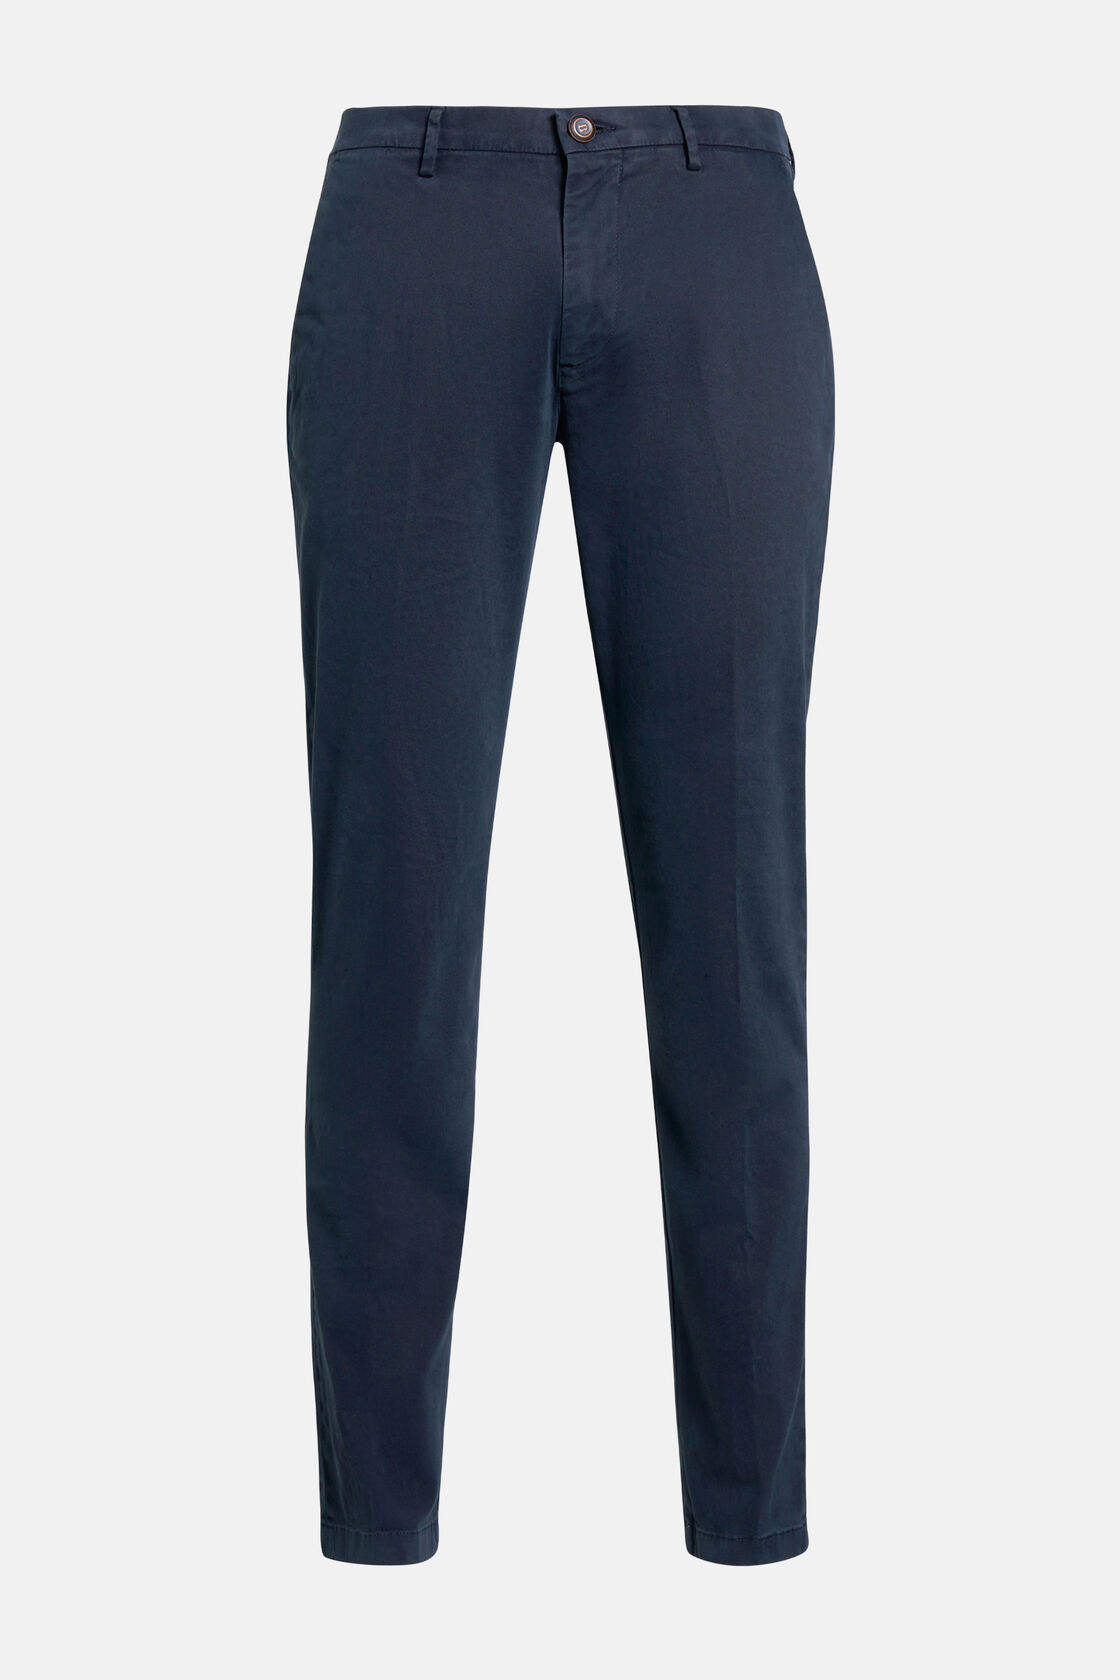 Stretch Cotton Pants, Navy blue, hi-res